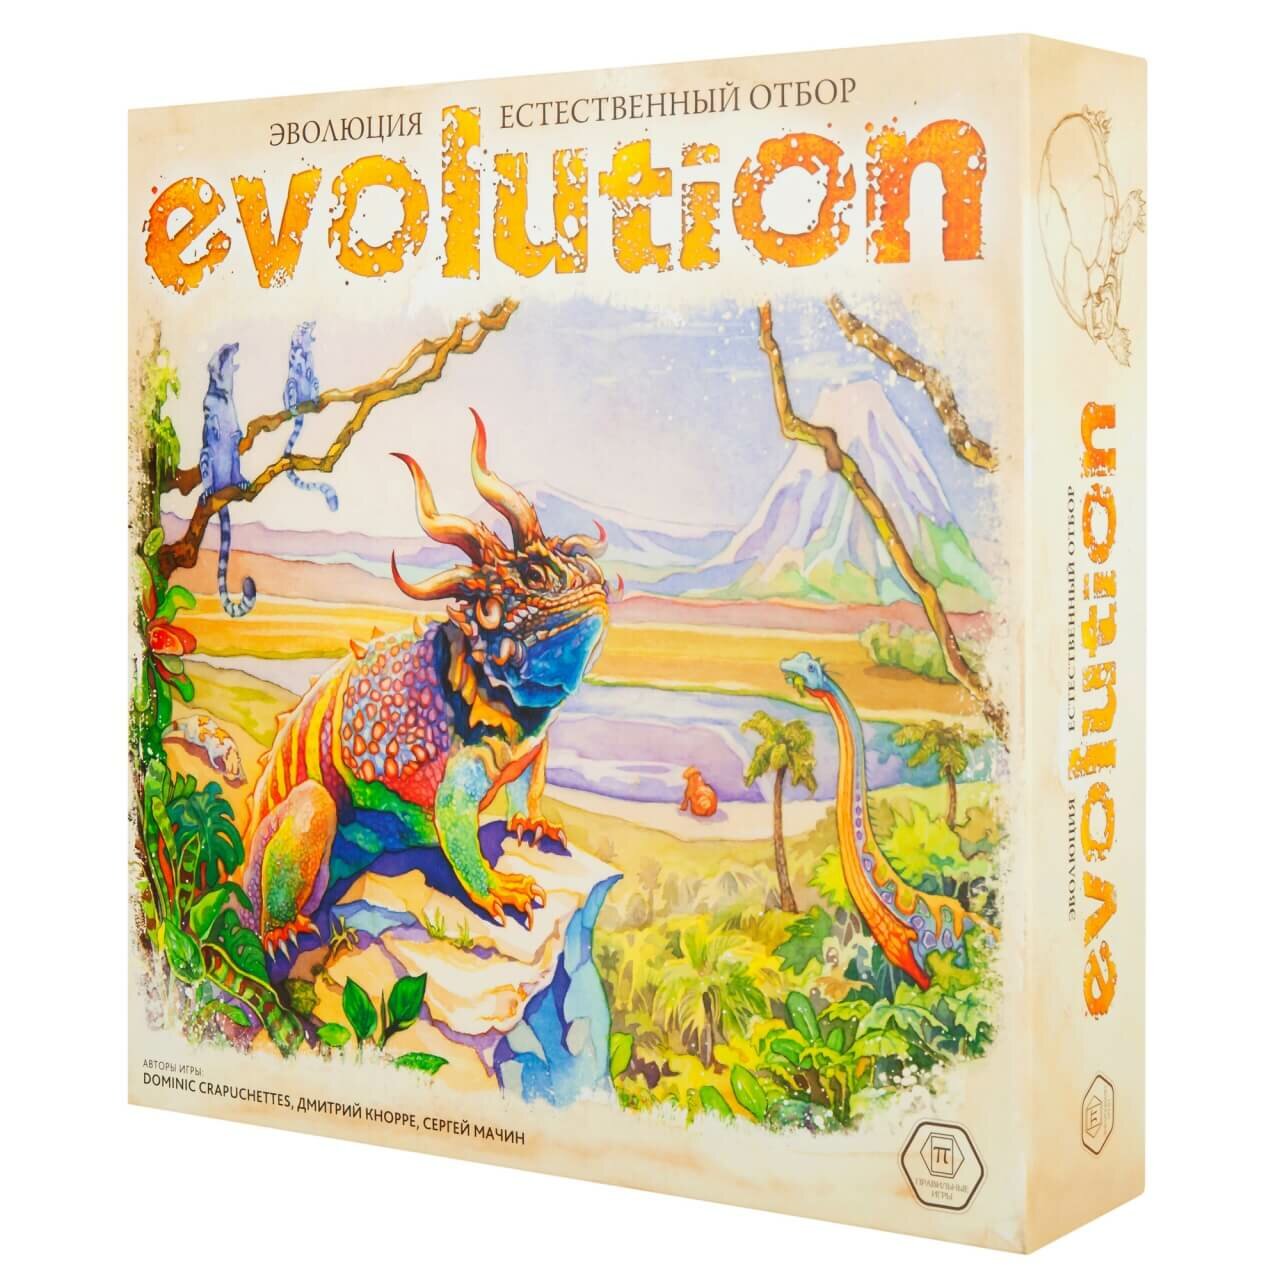 Правильные игры эволюция. Естественный отбор. Арт. 13-03-01